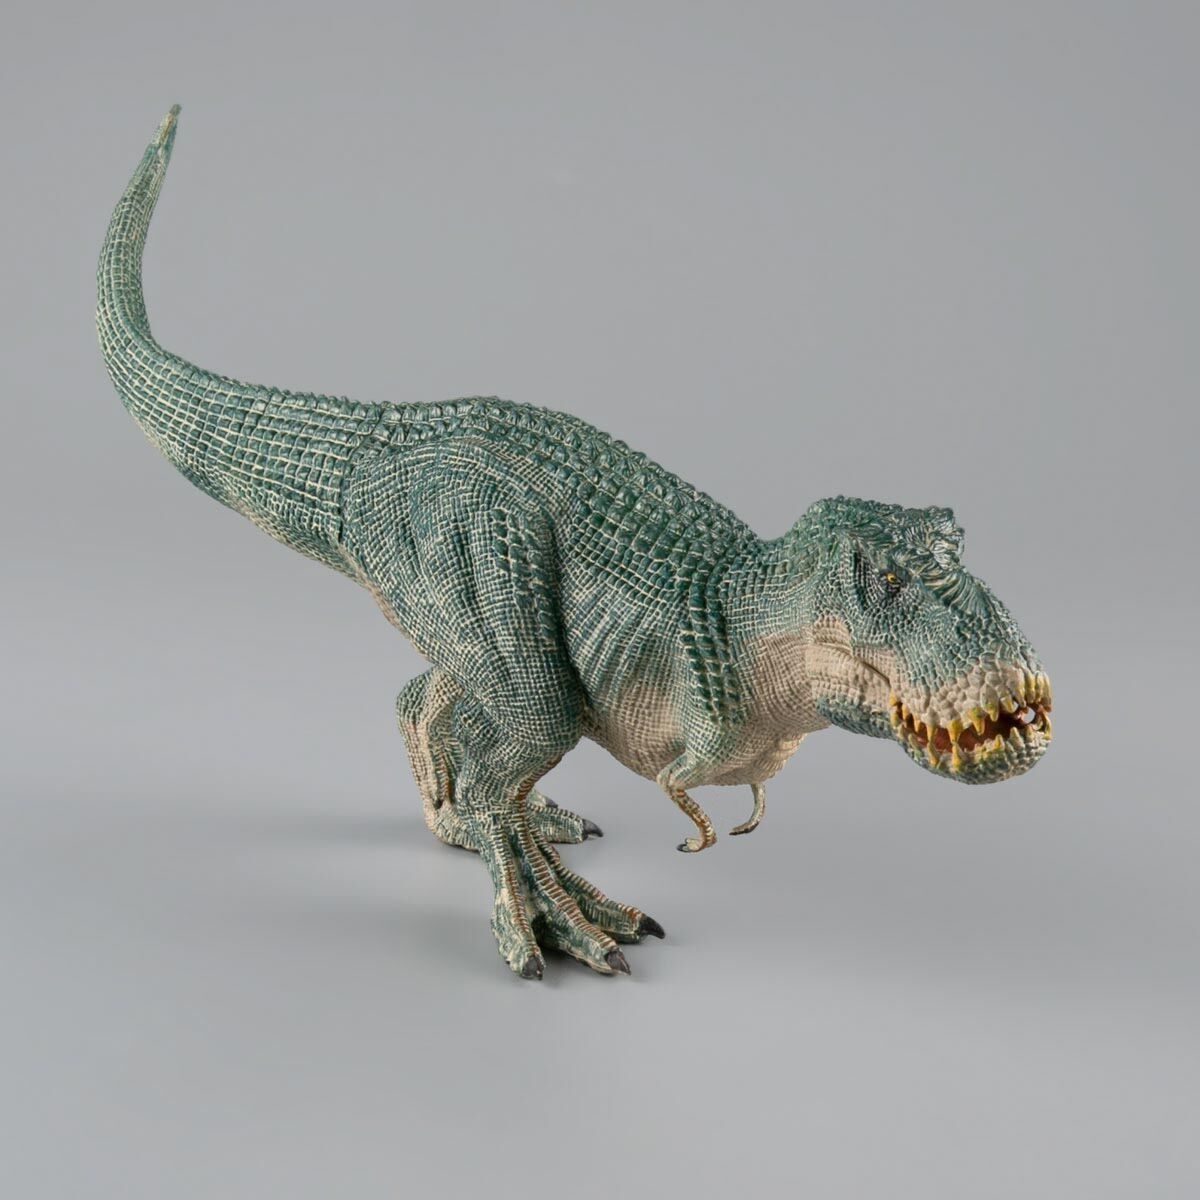 Продам динозавра Vastatosaur rex